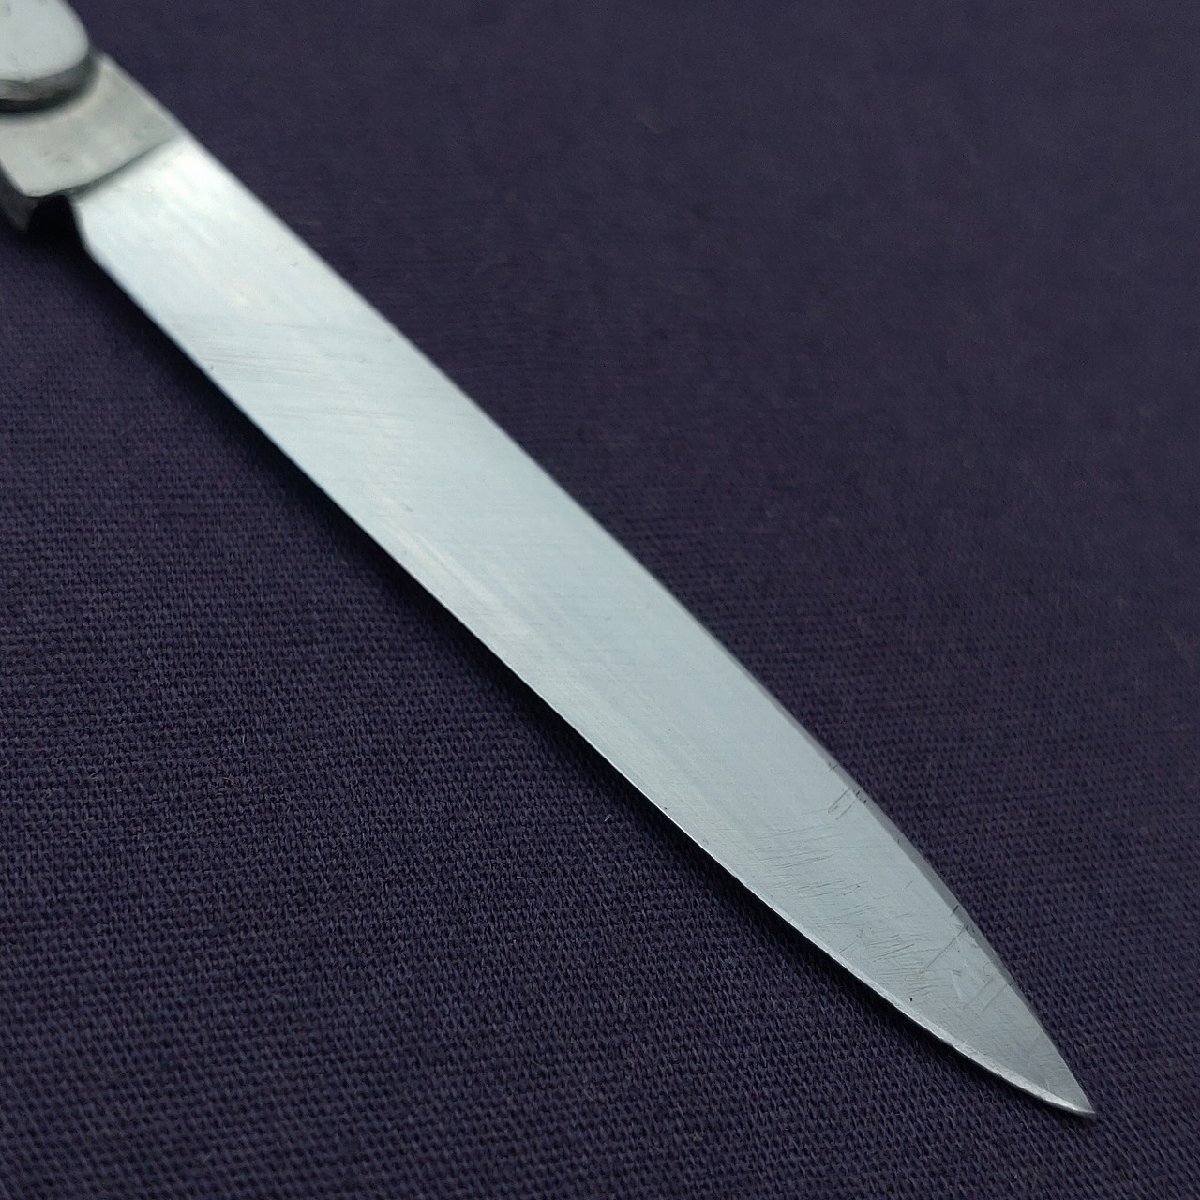 折り畳みナイフ 刃長約54㎜ 全長約142㎜ 小型ナイフ 携帯用刃物 【7189】の画像4